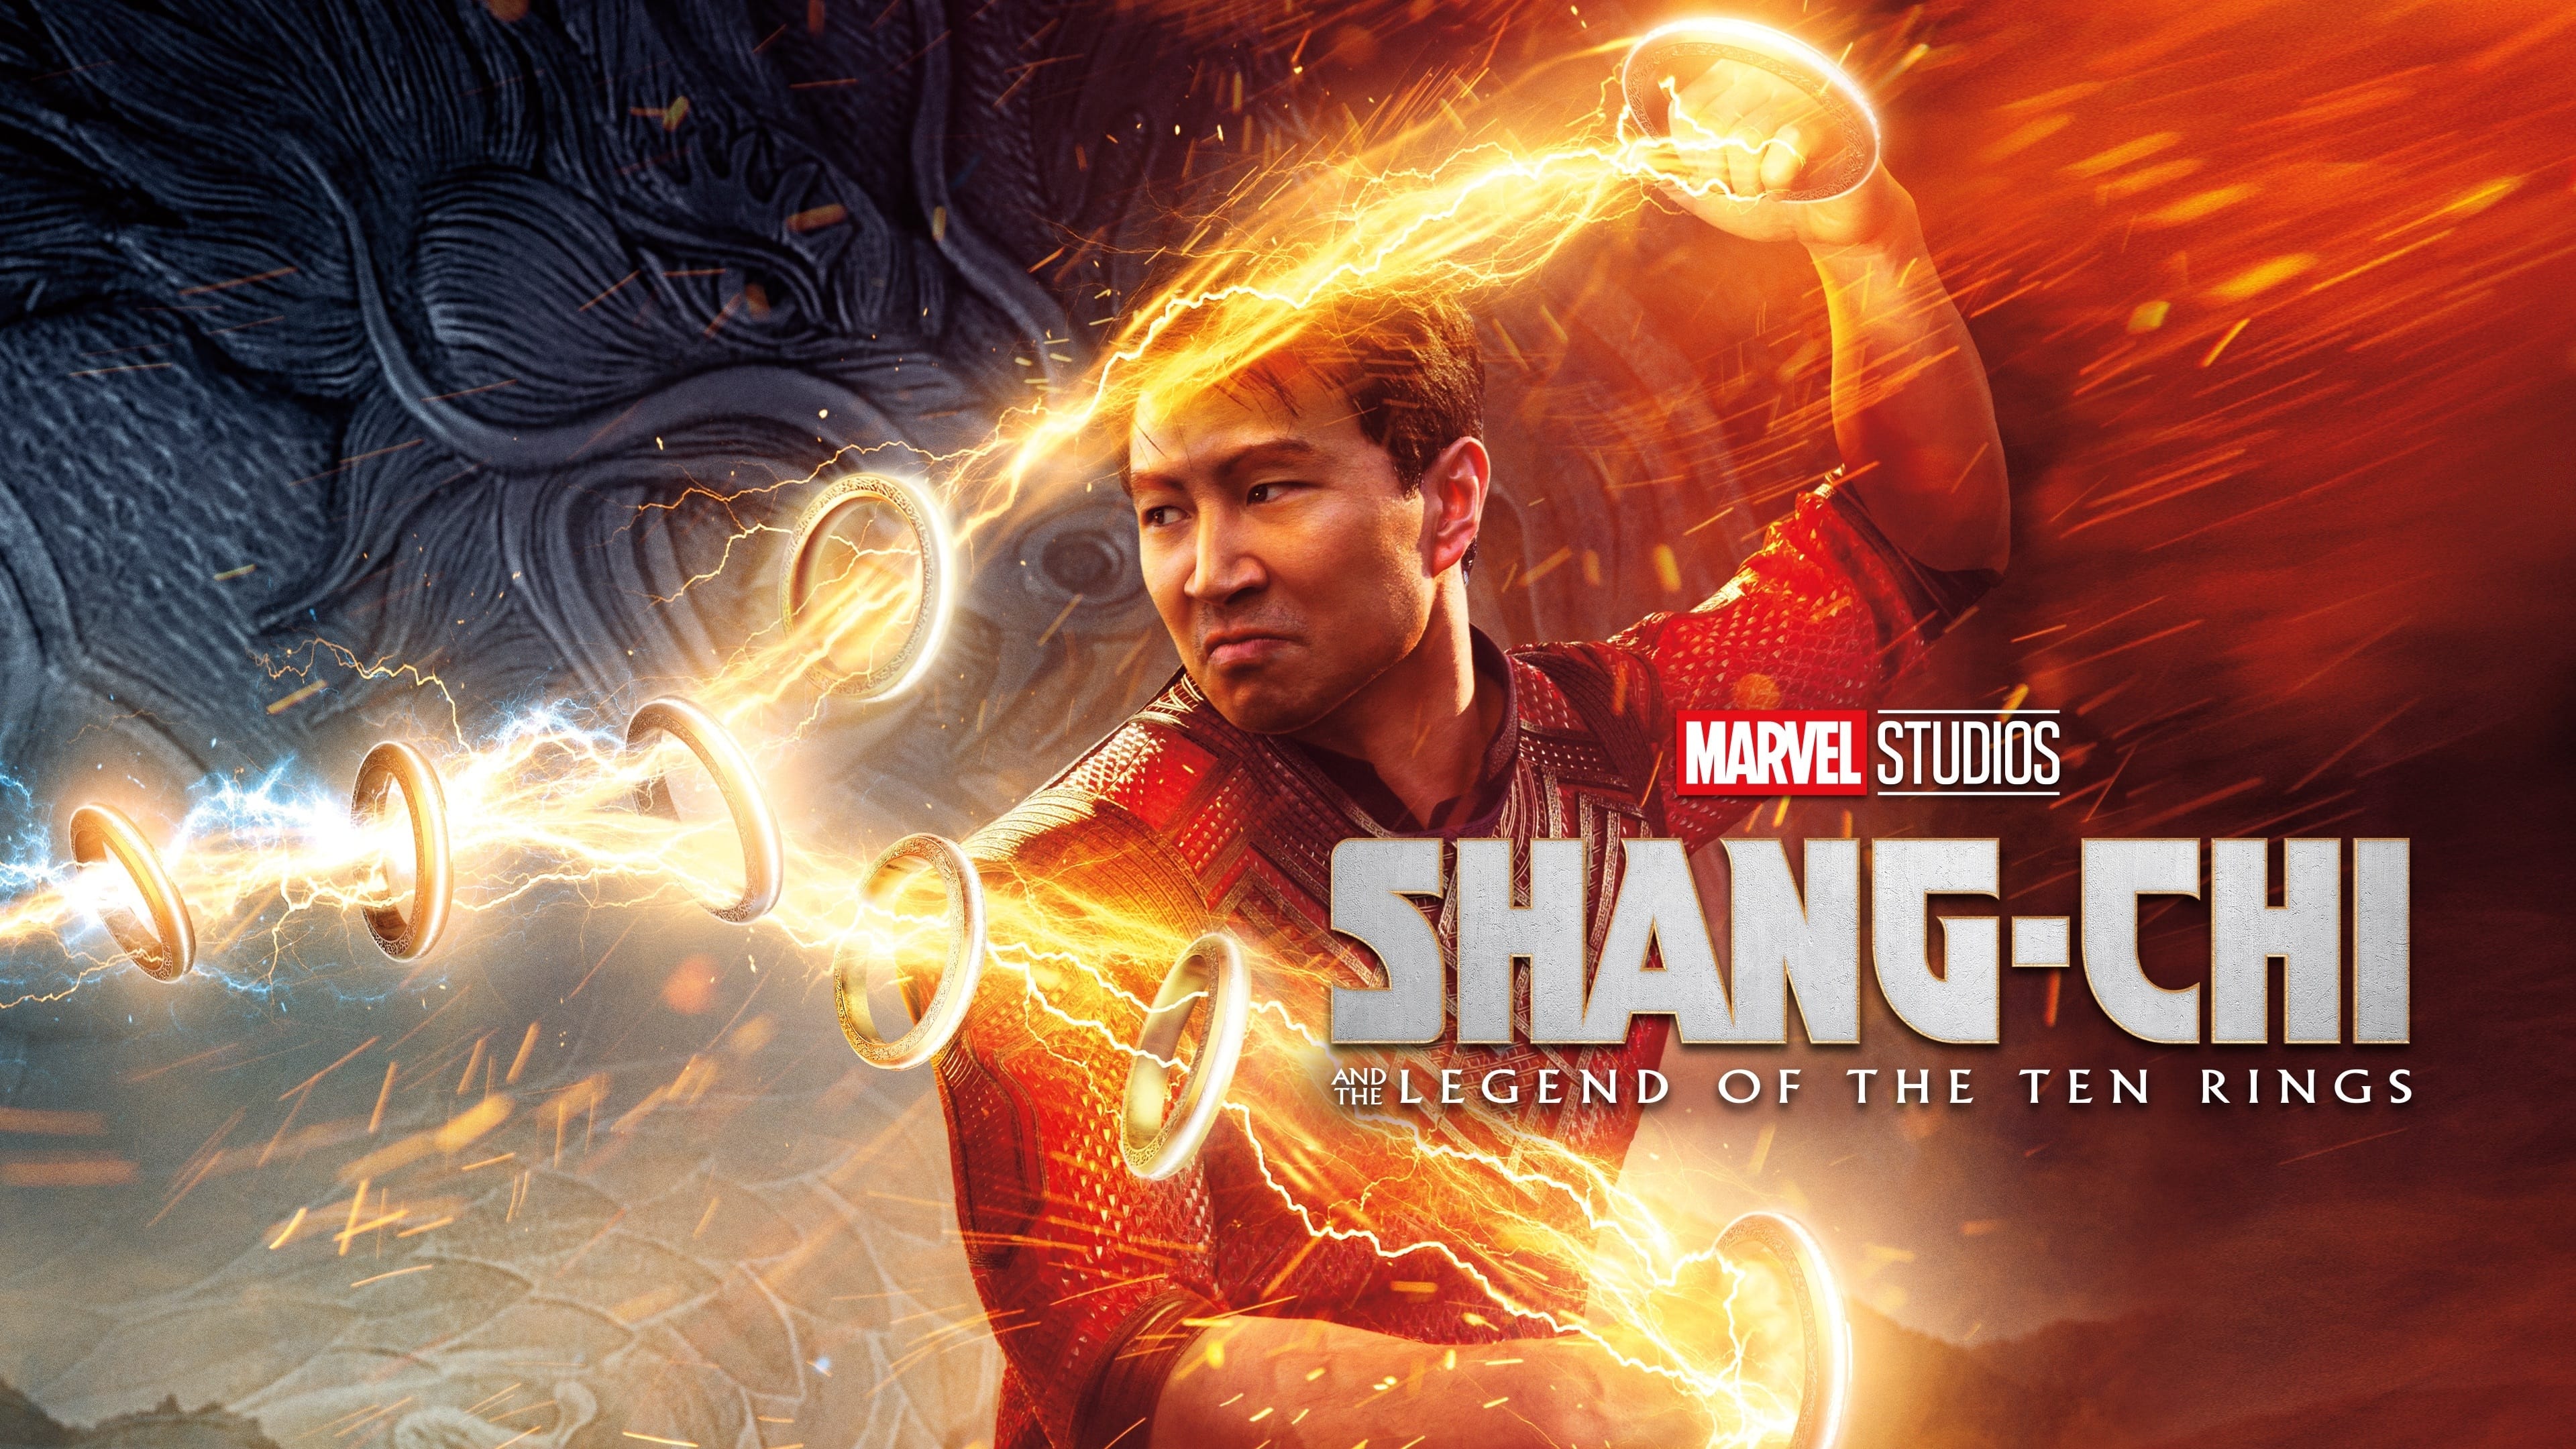 Shang-Chi és a tíz gyűrű legendája (2021)